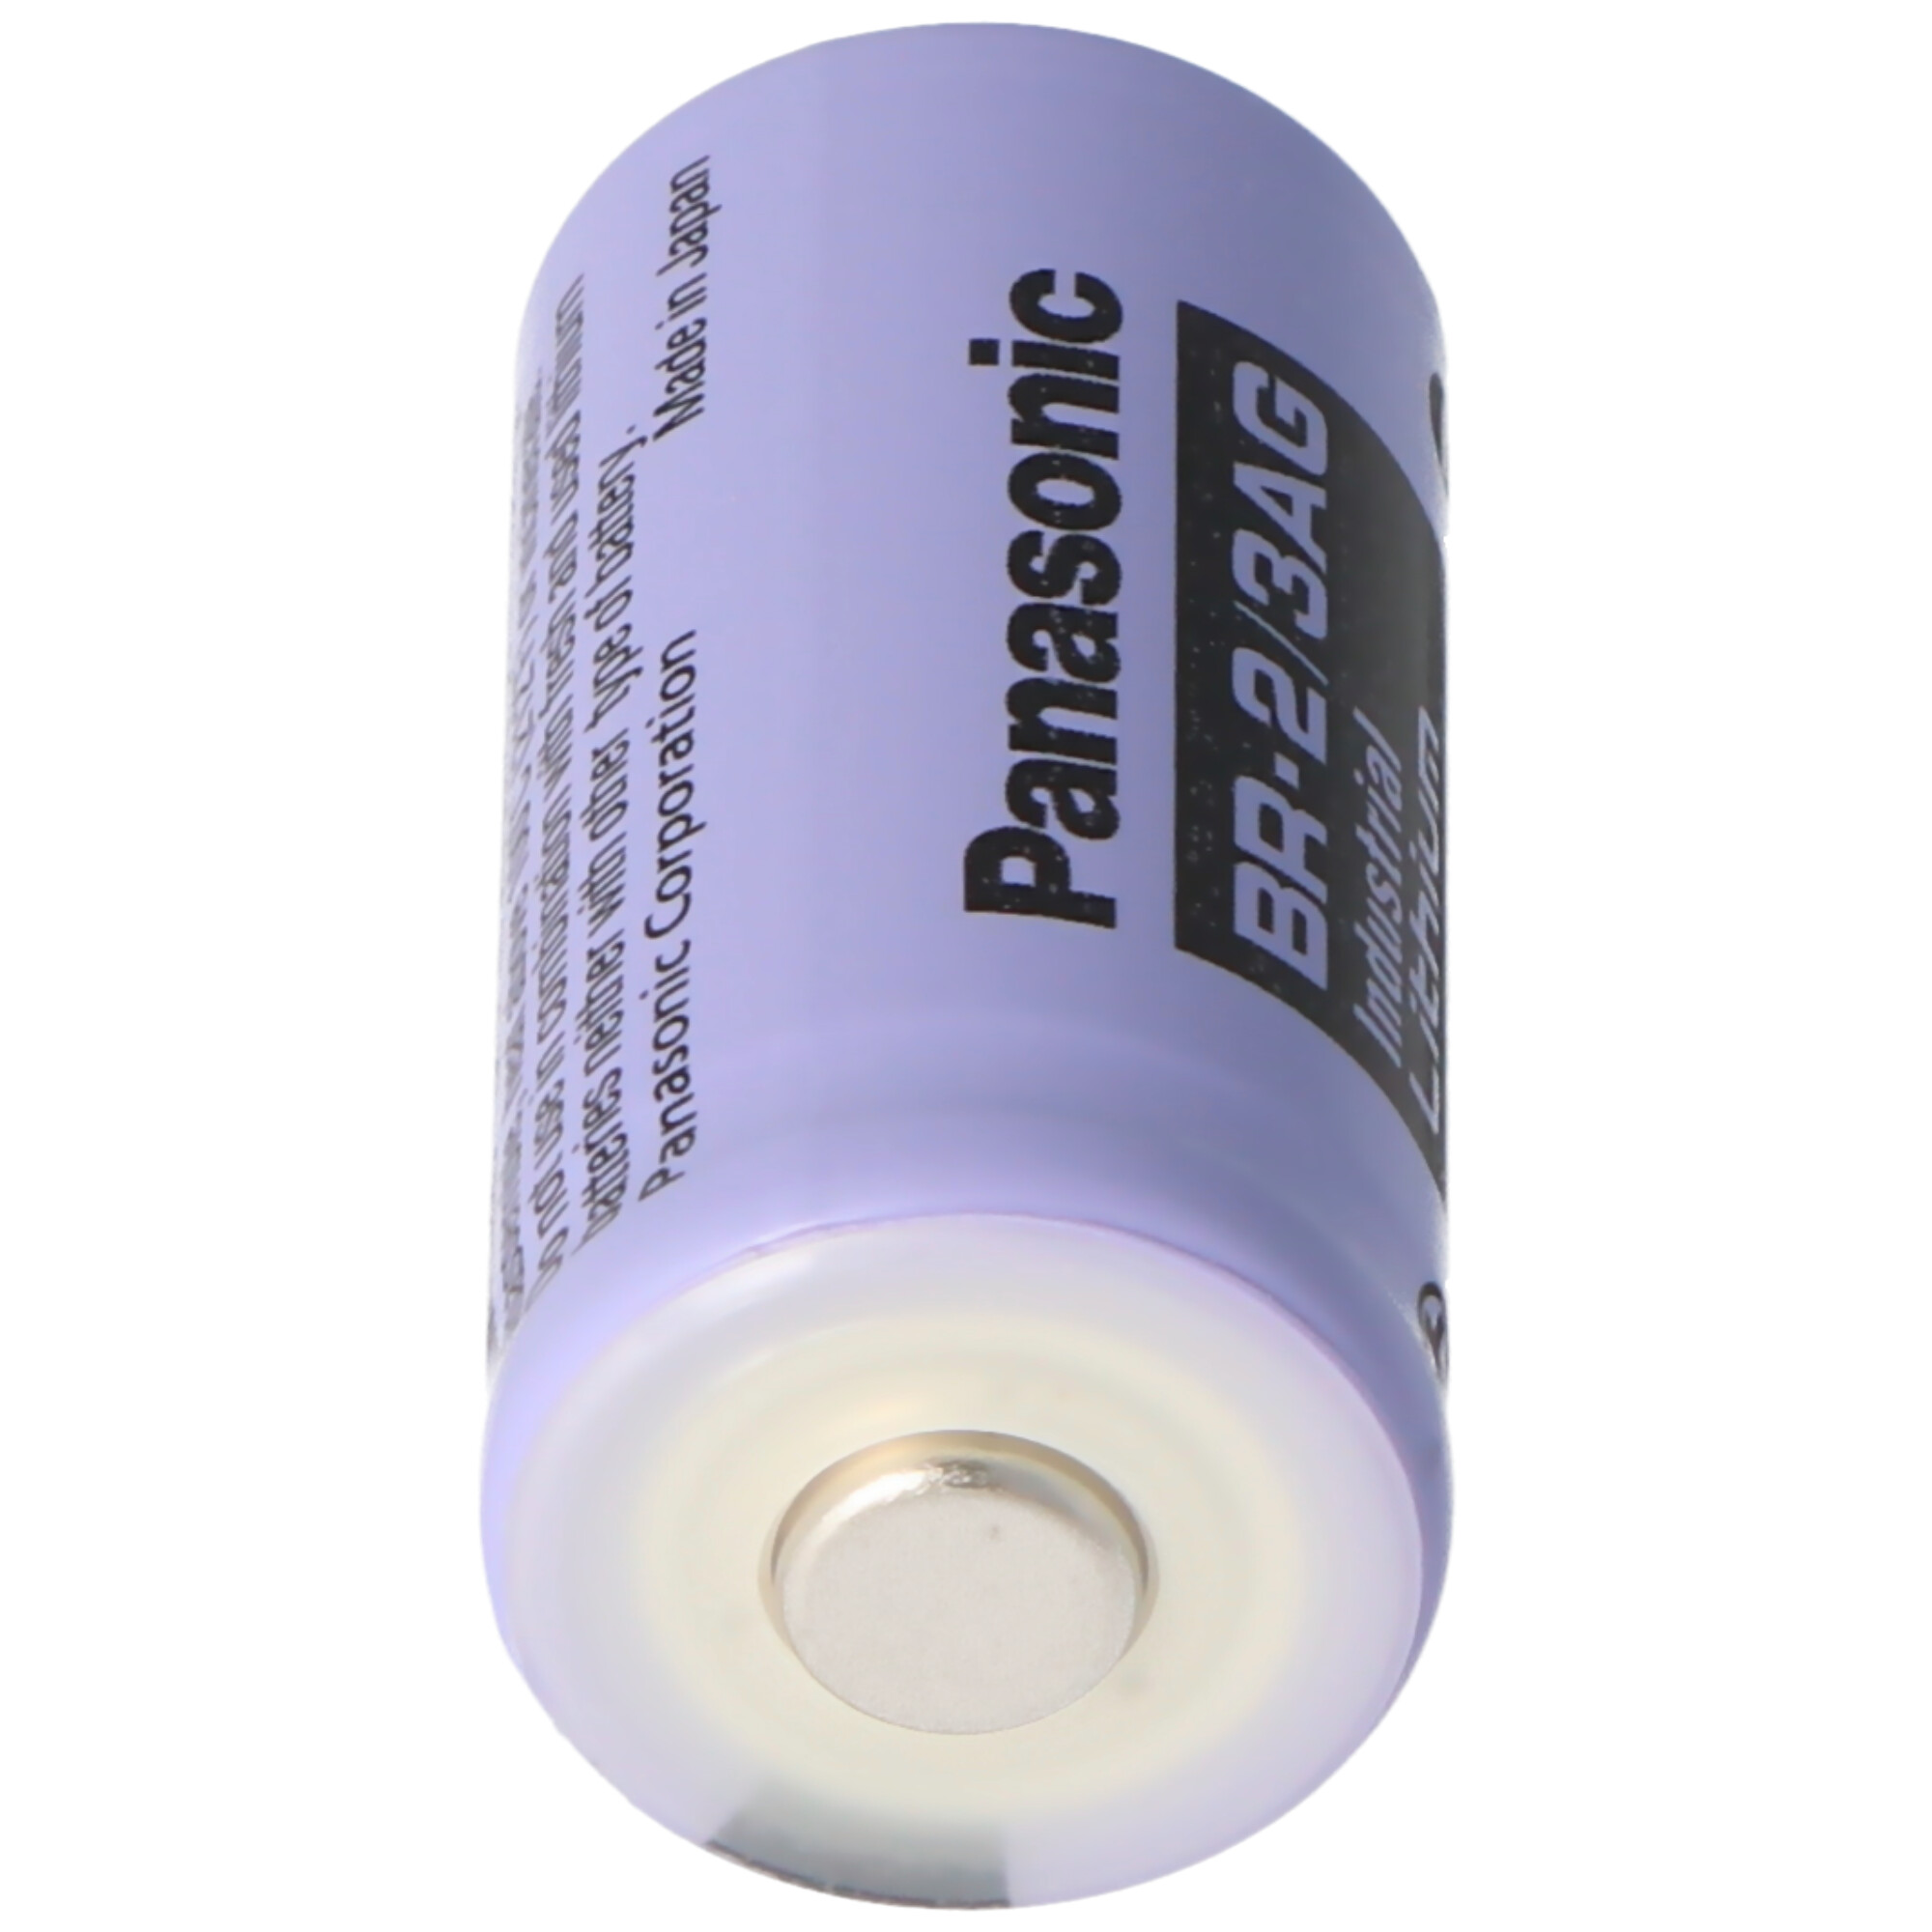 Panasonic Lithium 3V Batterie BR 2/3AGN 2/3 A Hochtemperaturzelle